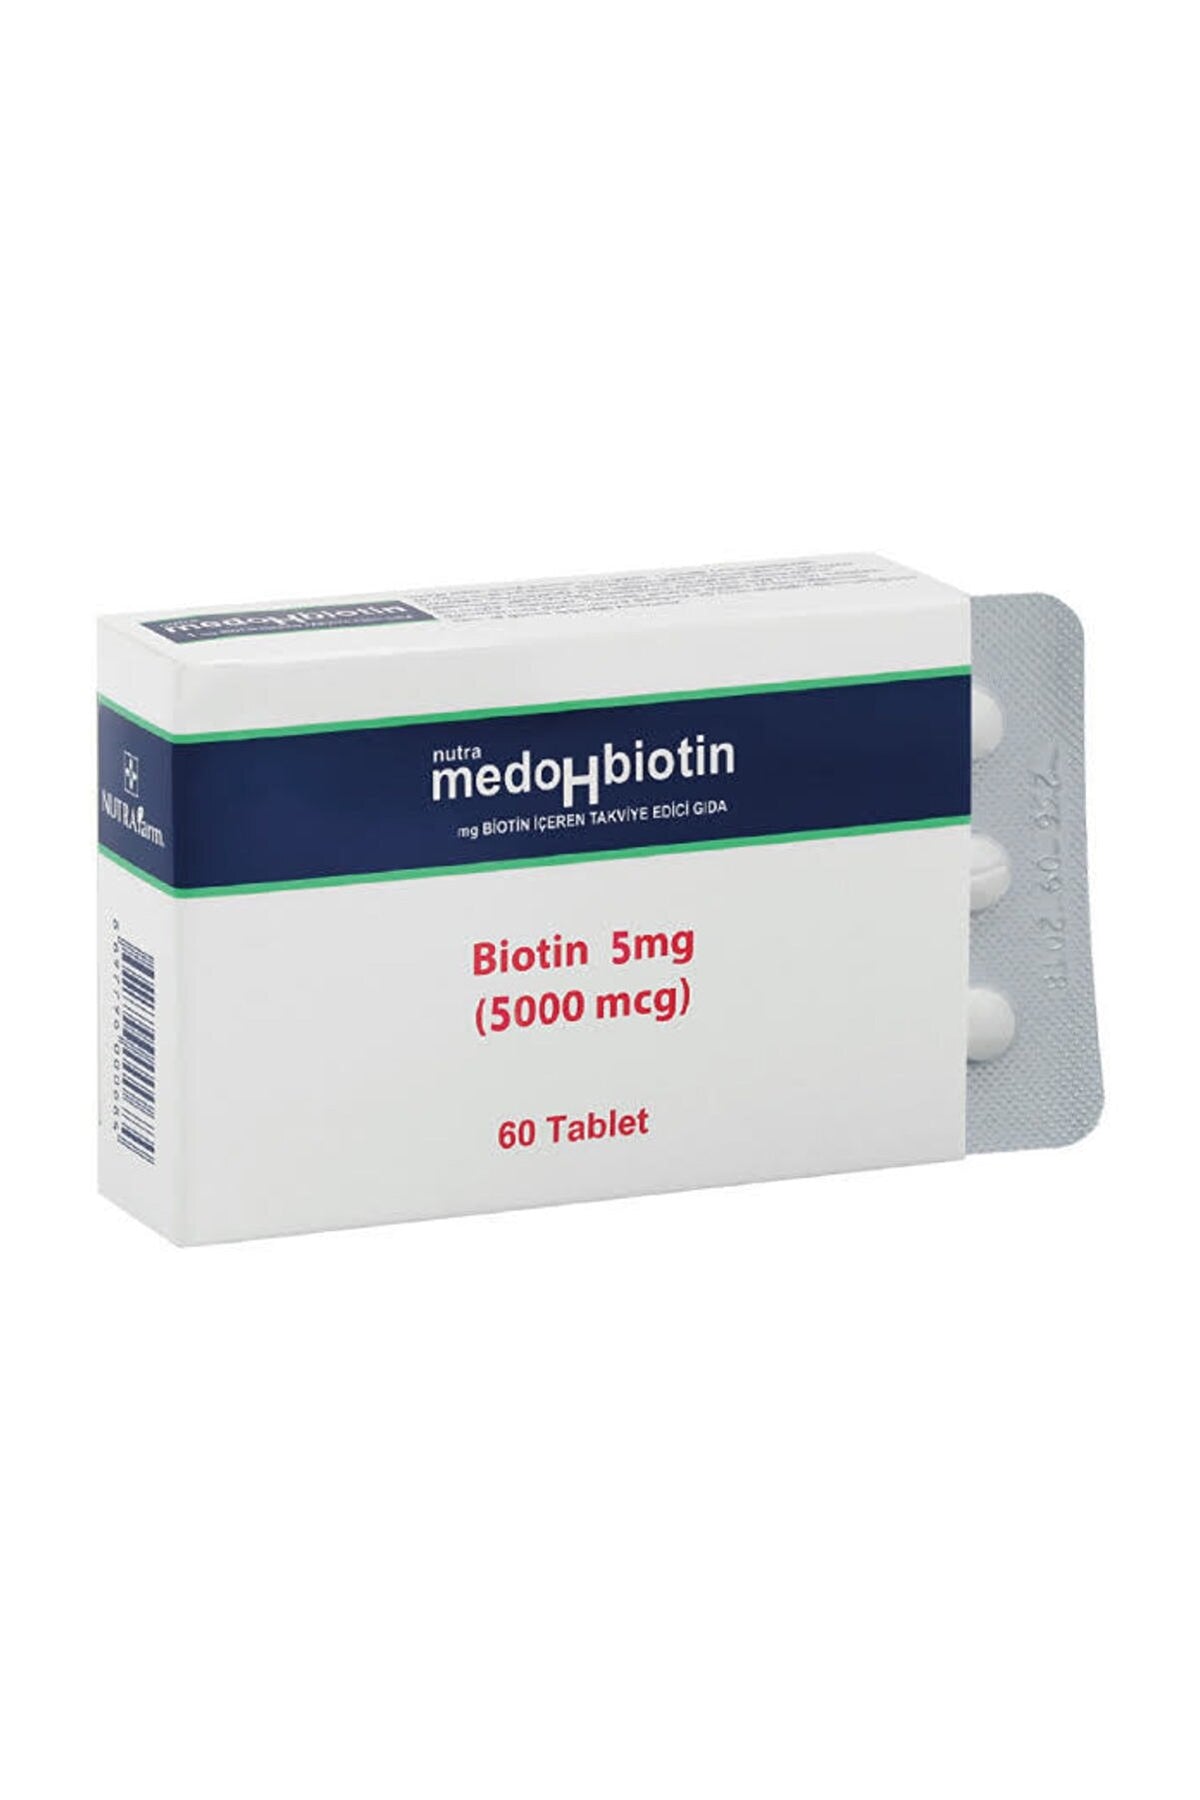 Dermoskin Medohbiotin 5 mg 60 Tablet